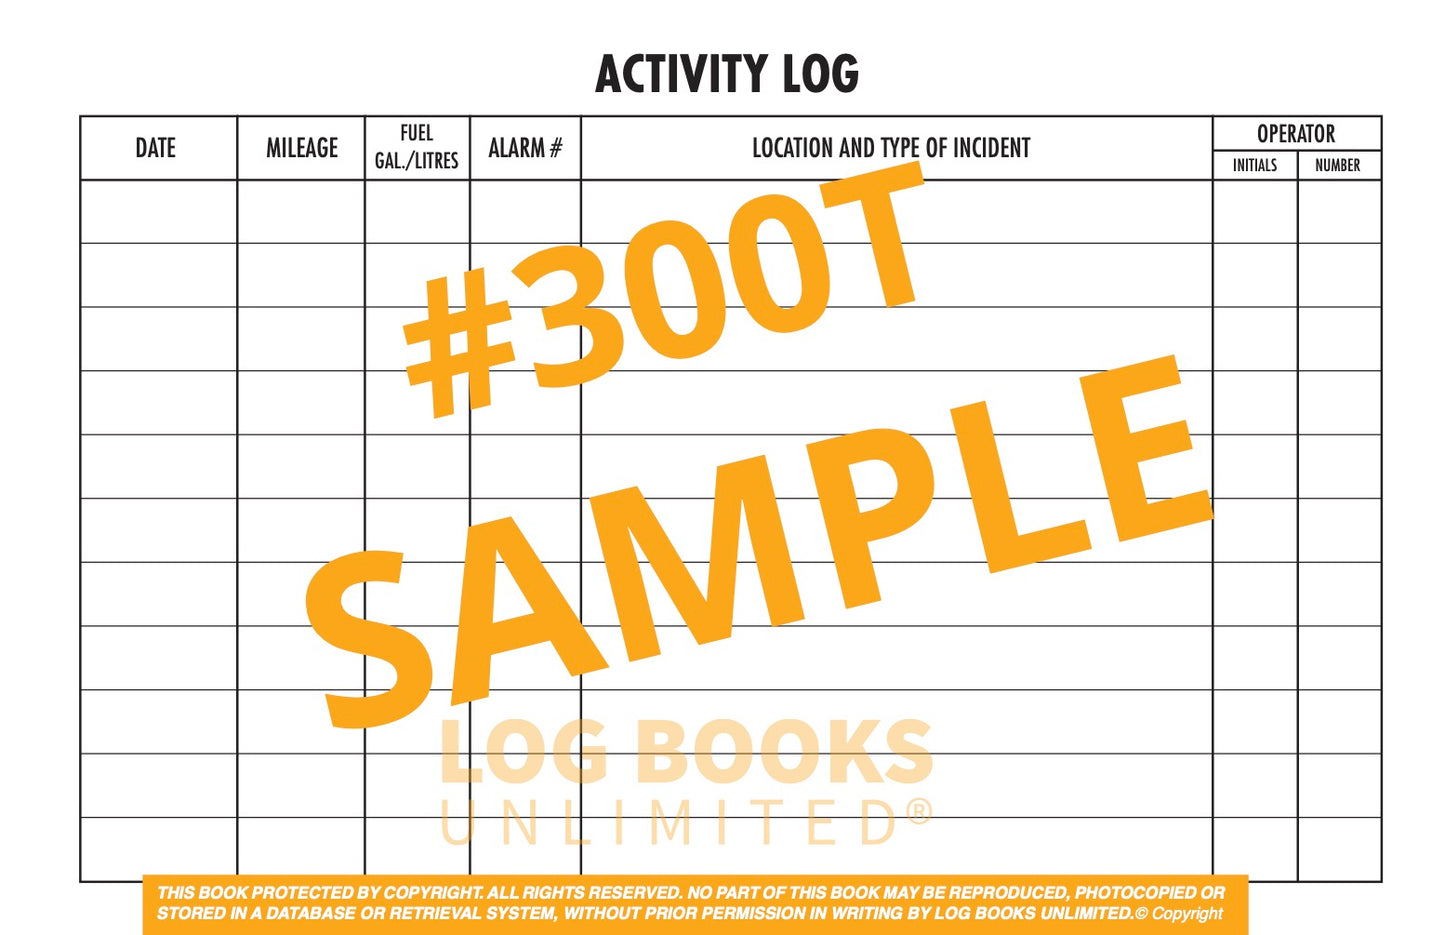 Fire Truck Activity Log Book #300T